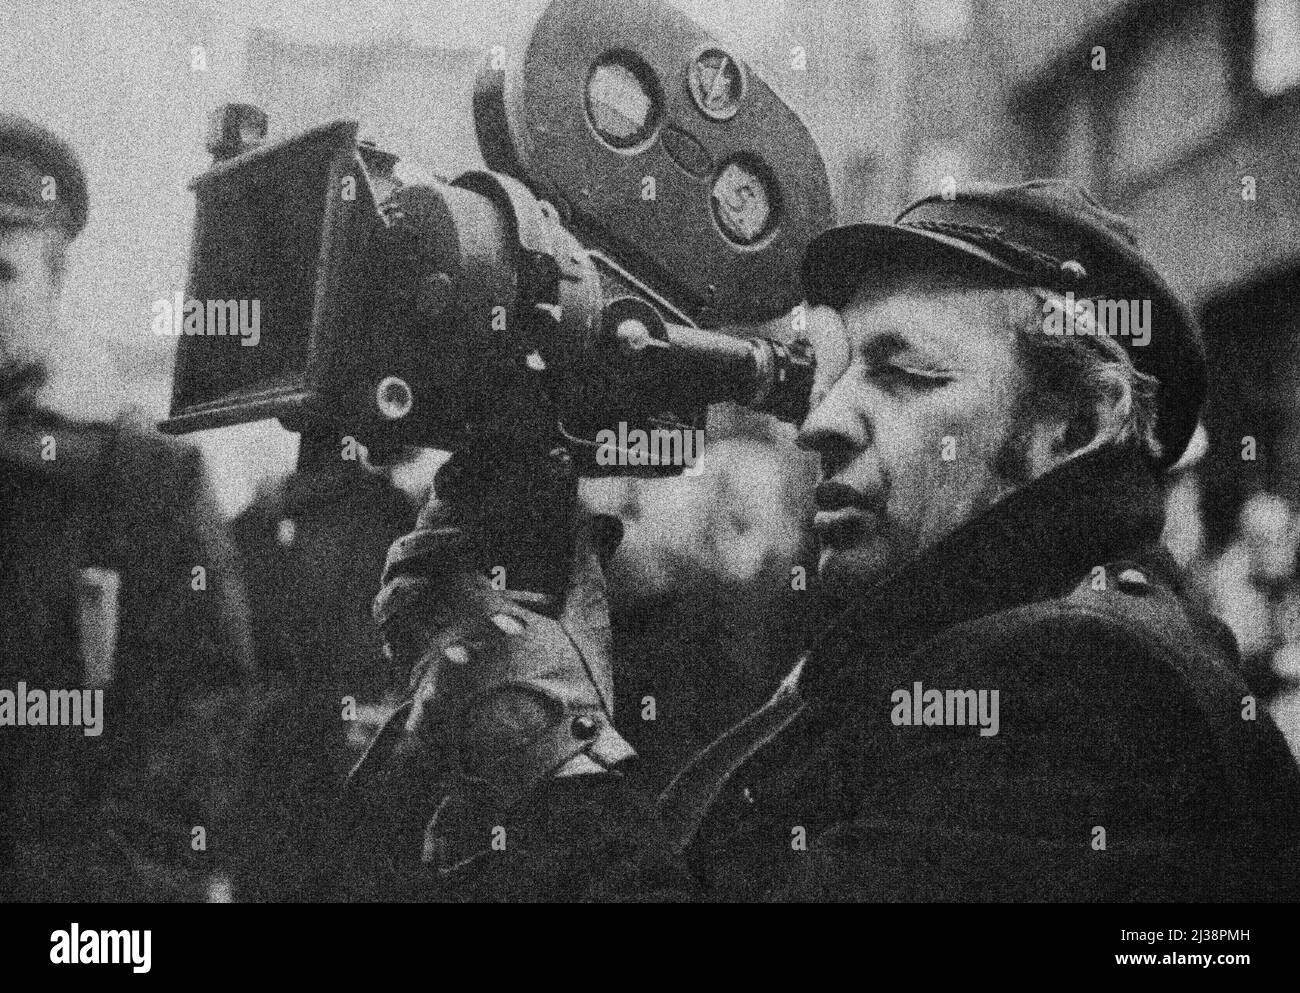 POLEN - 1974 - der polnische Filmregisseur Andrzej Wajda (1926-2016) über die Dreharbeiten zum Film "das gelobte Land" im Jahr 1974 - Foto: Geopix Stockfoto